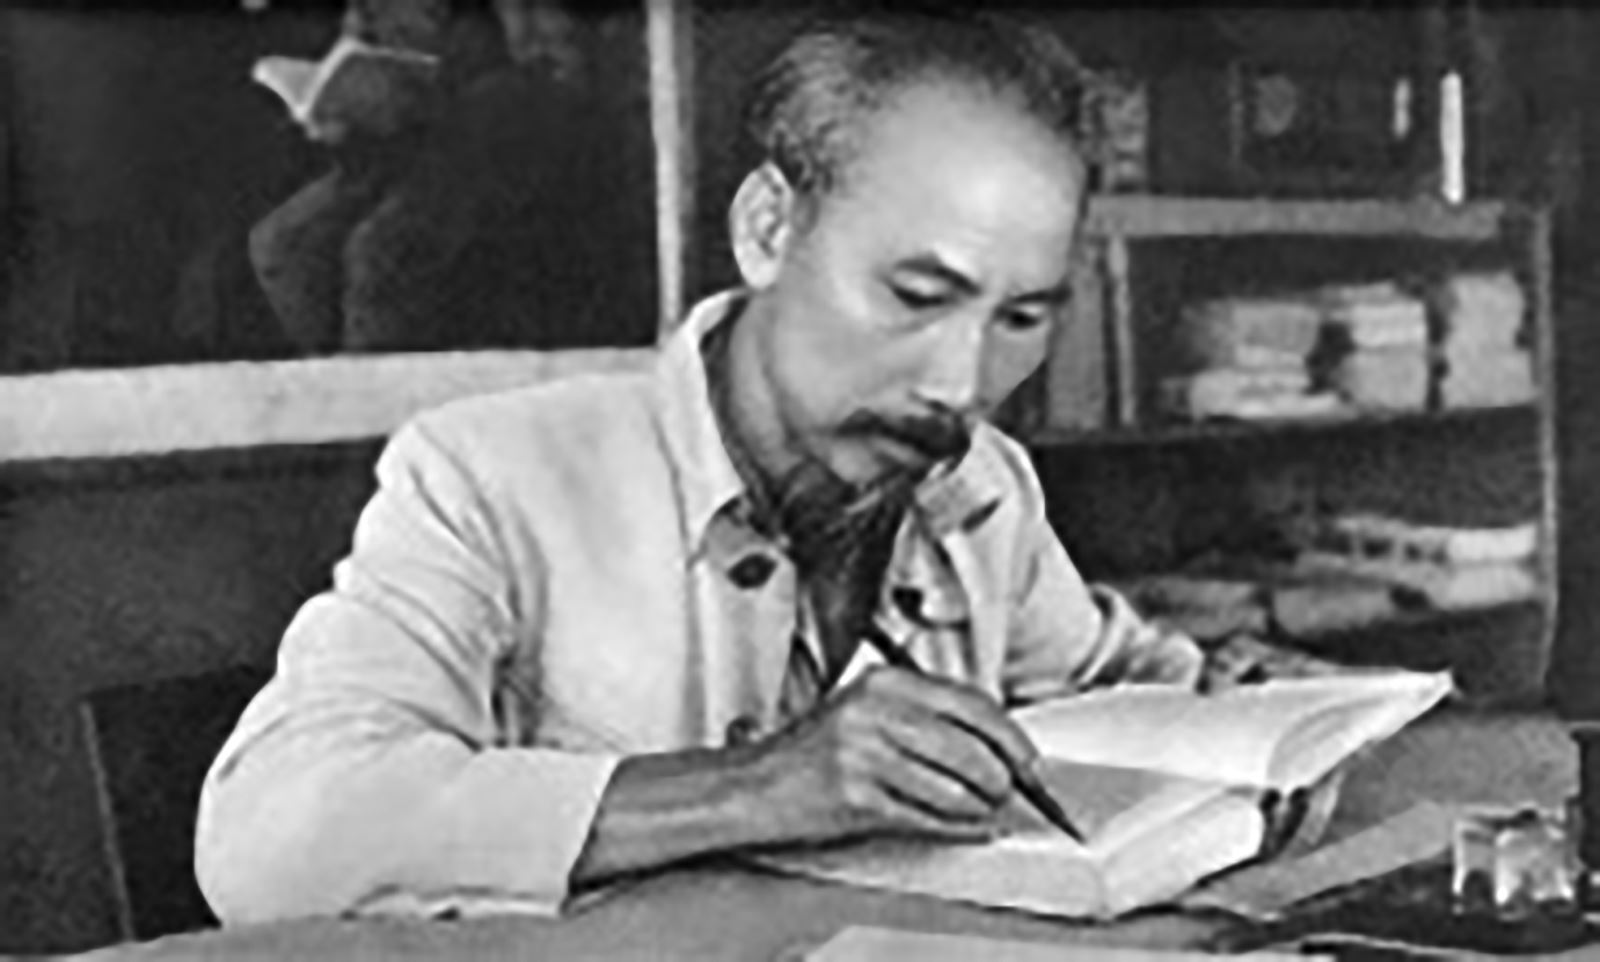 Học tập phong cách làm việc tận tụy, trách nhiệm và khoa học của Chủ tịch Hồ Chí Minh